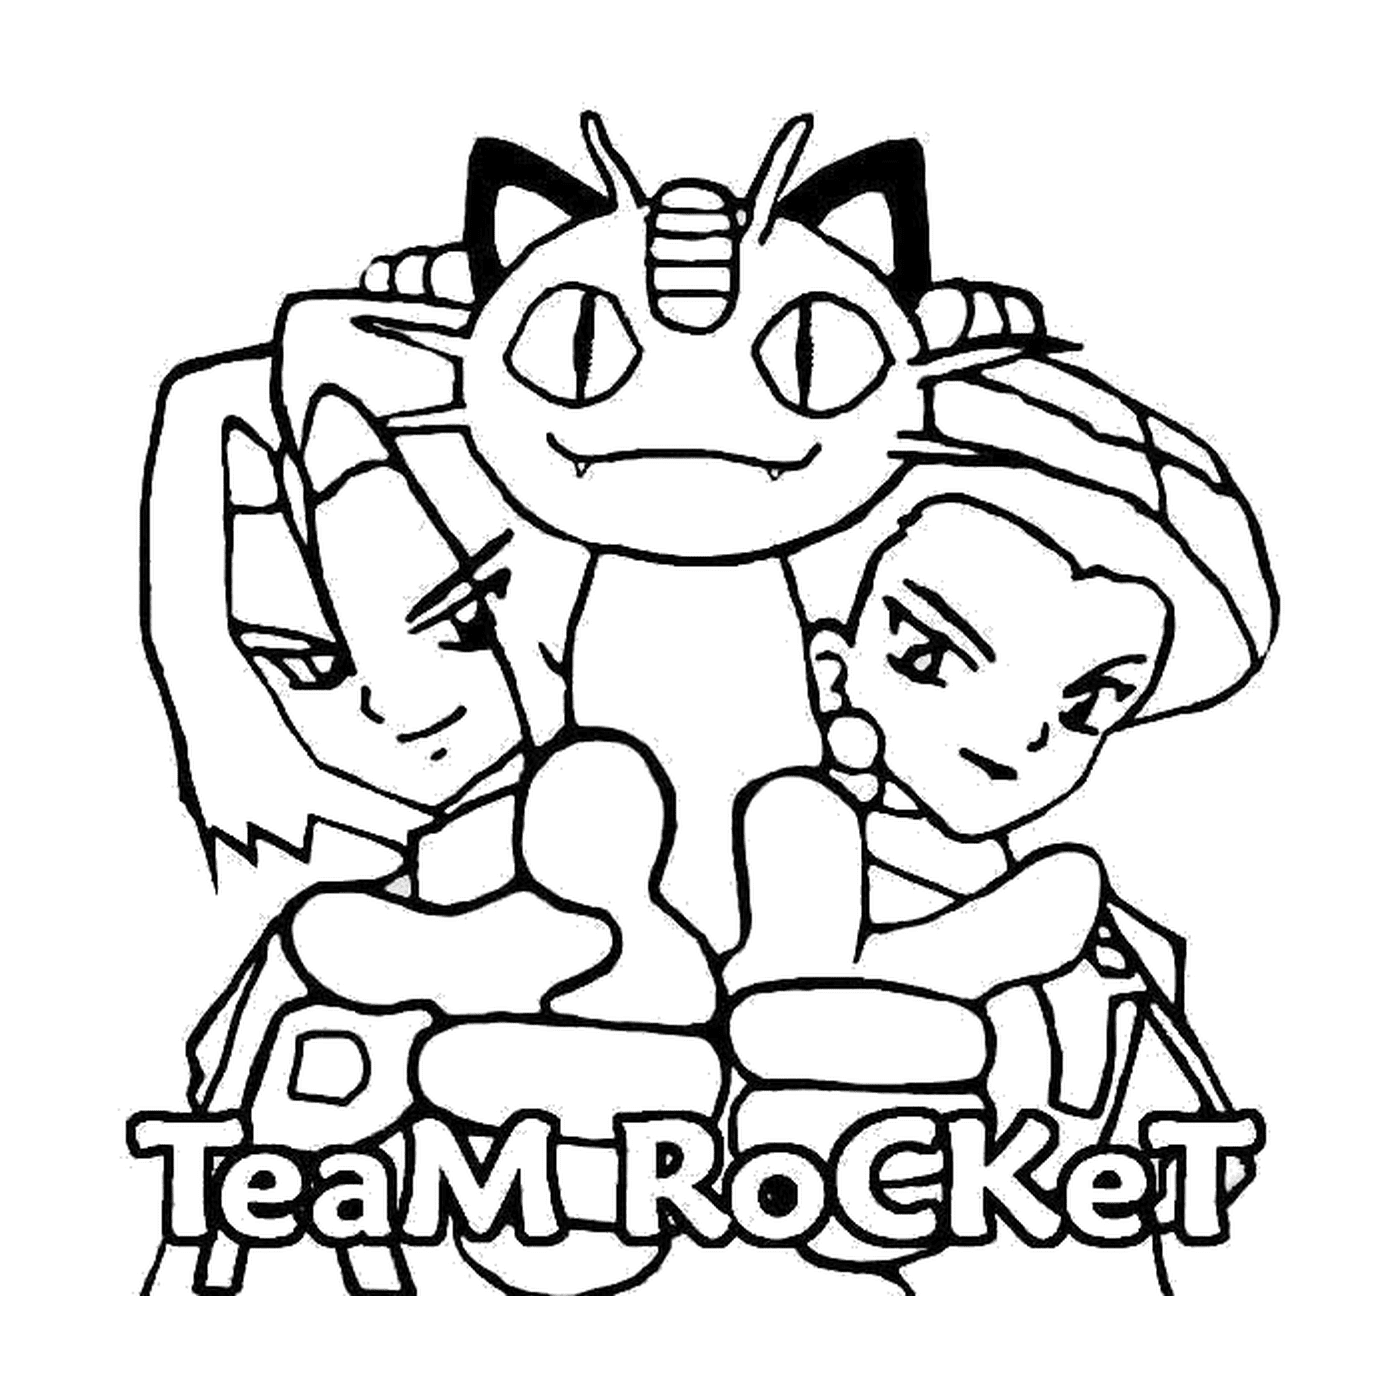  Team Rocket : Gruppo di cattivi 